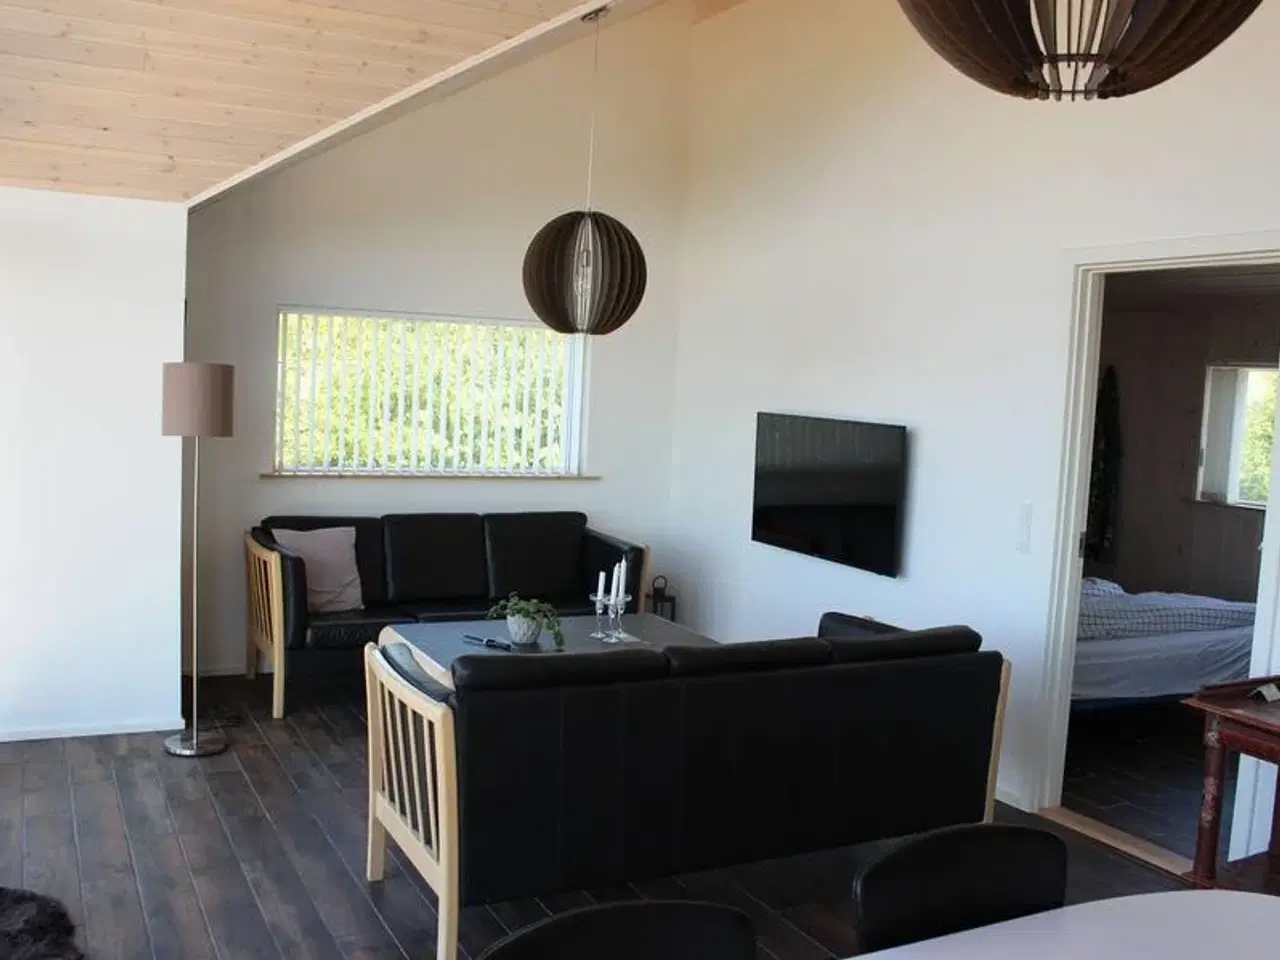 Billede 4 - Nyt, dejligt feriehus for 8 personer udlejes i Veddinge bakker - et af Danmarks smukkeste områder